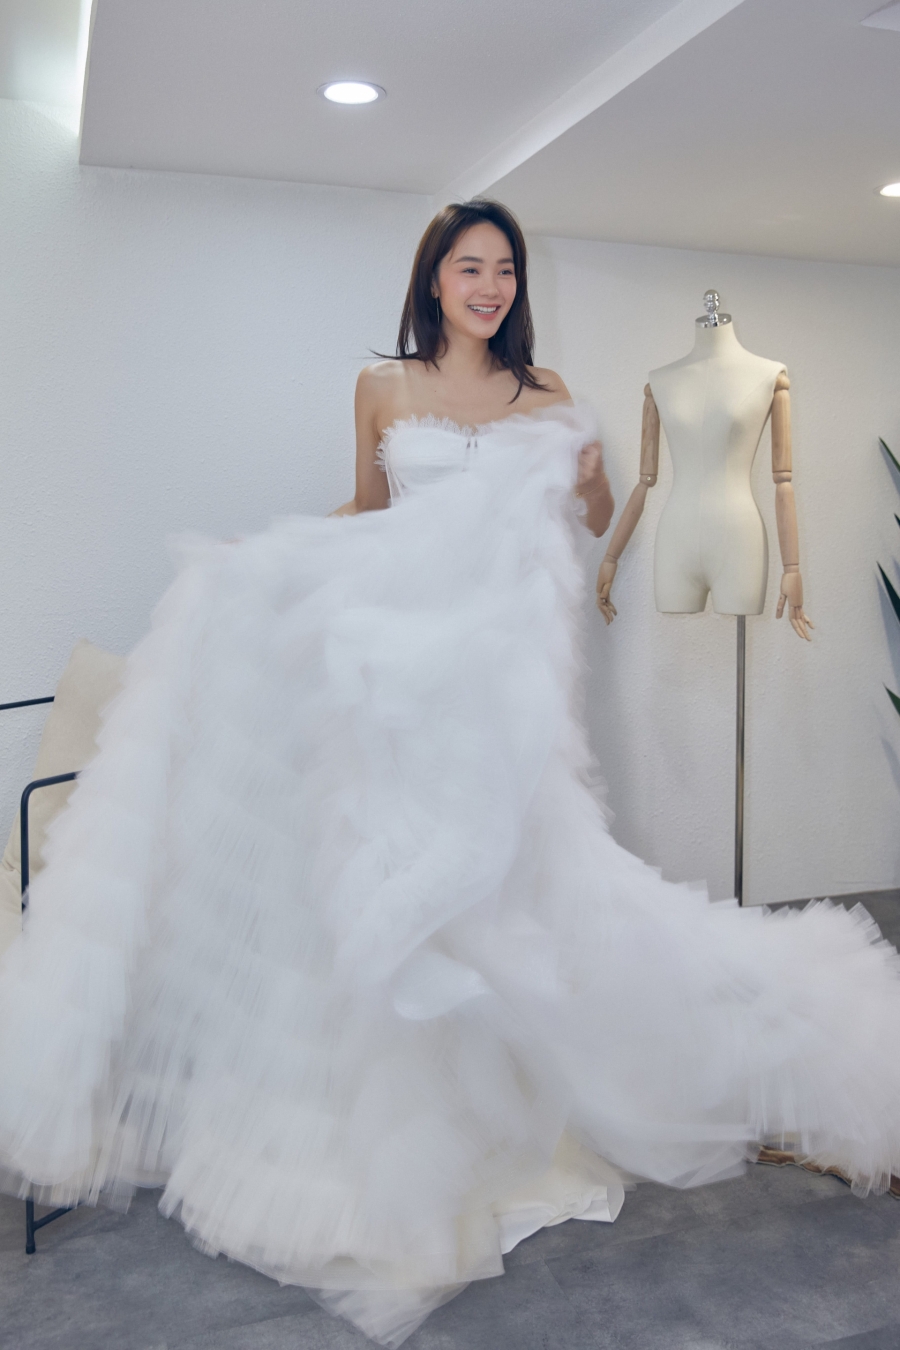 Vừa thử váy cưới Minh Hằng đã thoát vai để 'hóa' nữ doanh nhân sành điệu - Ảnh 7